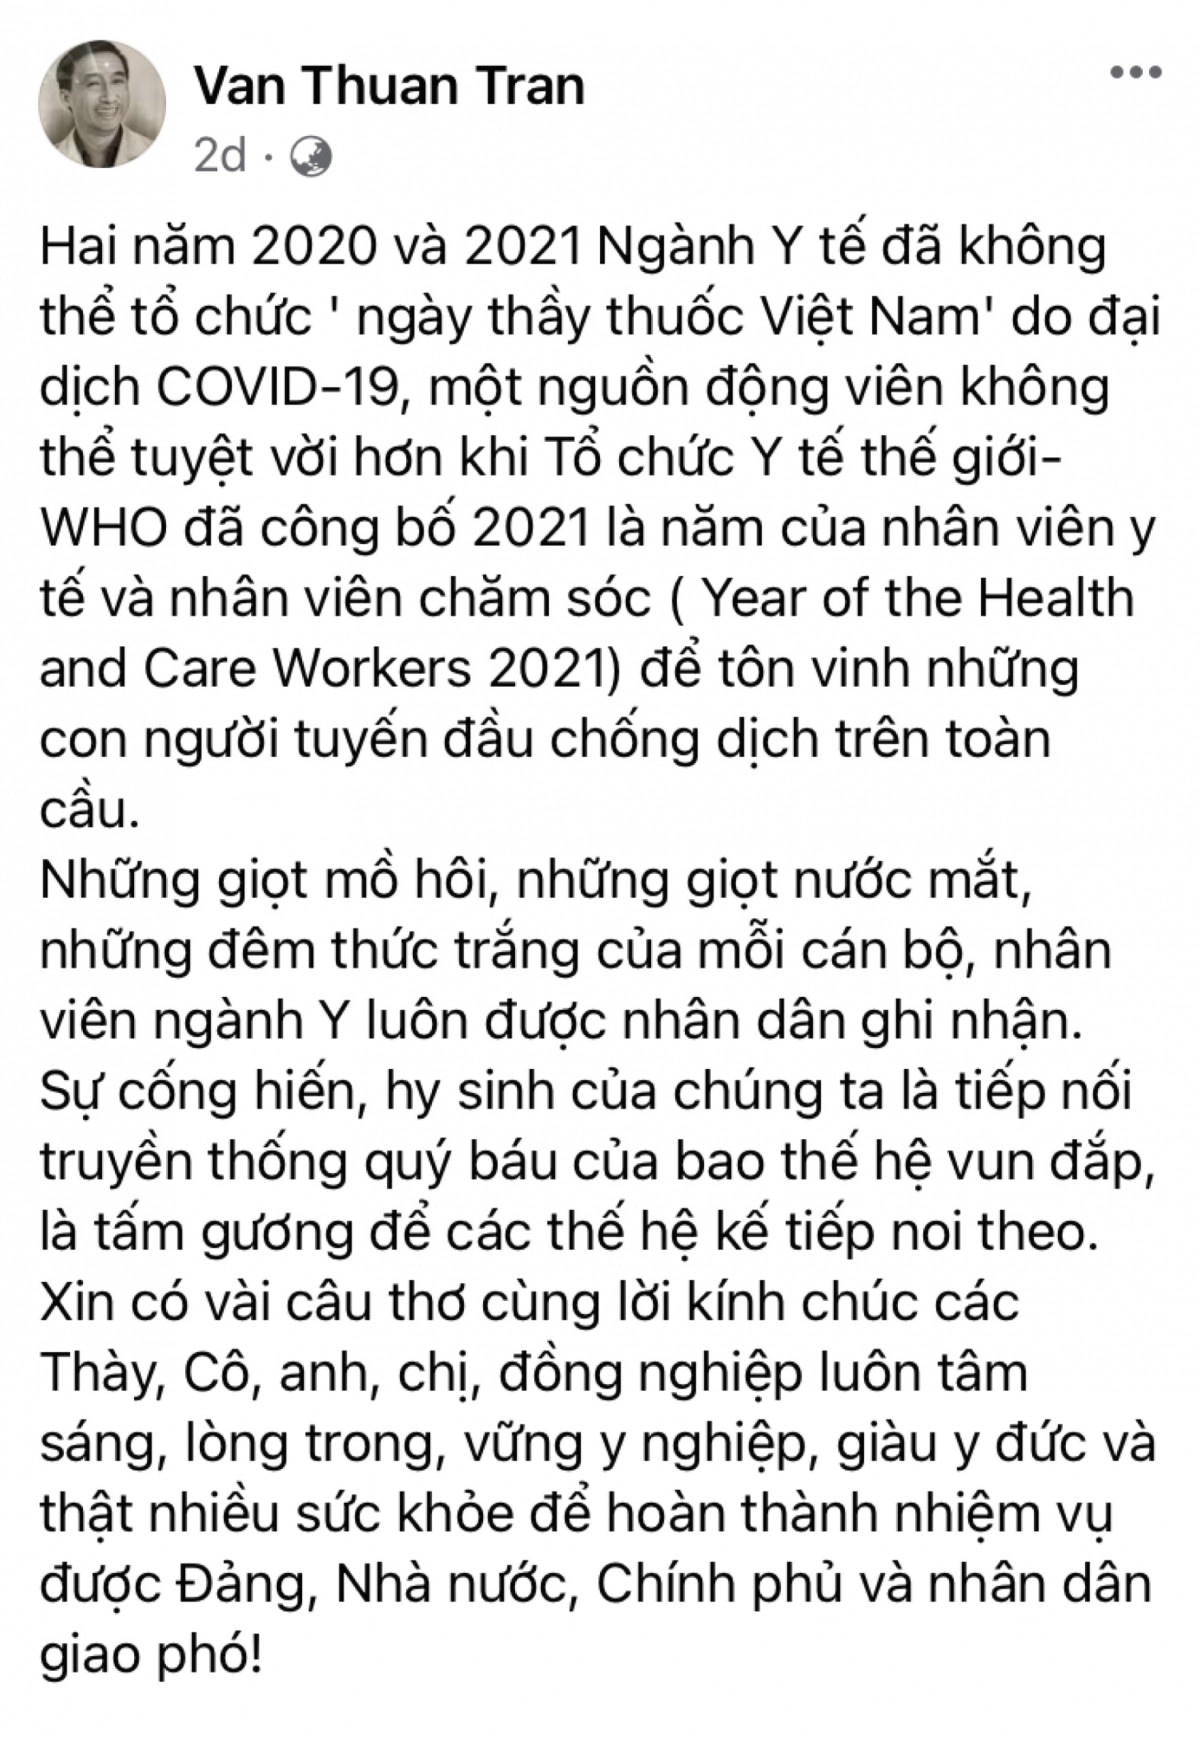 Trên trang Facebook cá nhân, Thứ trưởng Bộ Y tế Trần Văn Thuấn đã có bài viết về ngày 27/2 với lời chúc tới 